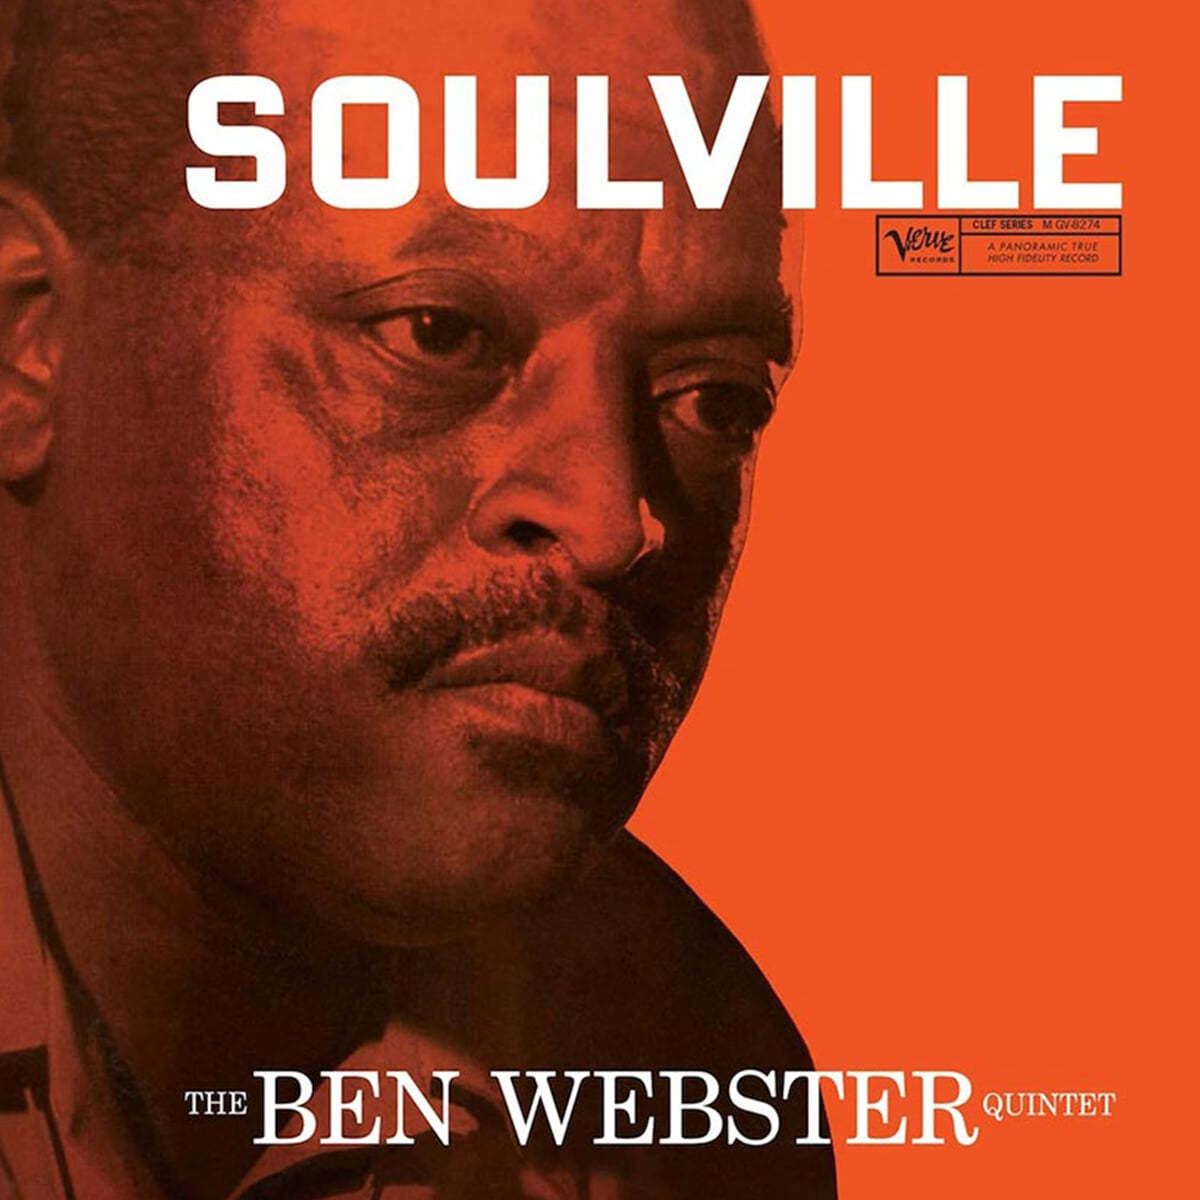 Ben Webster Quintet (벤 웹스터 퀸텟) - Soulville [2LP]